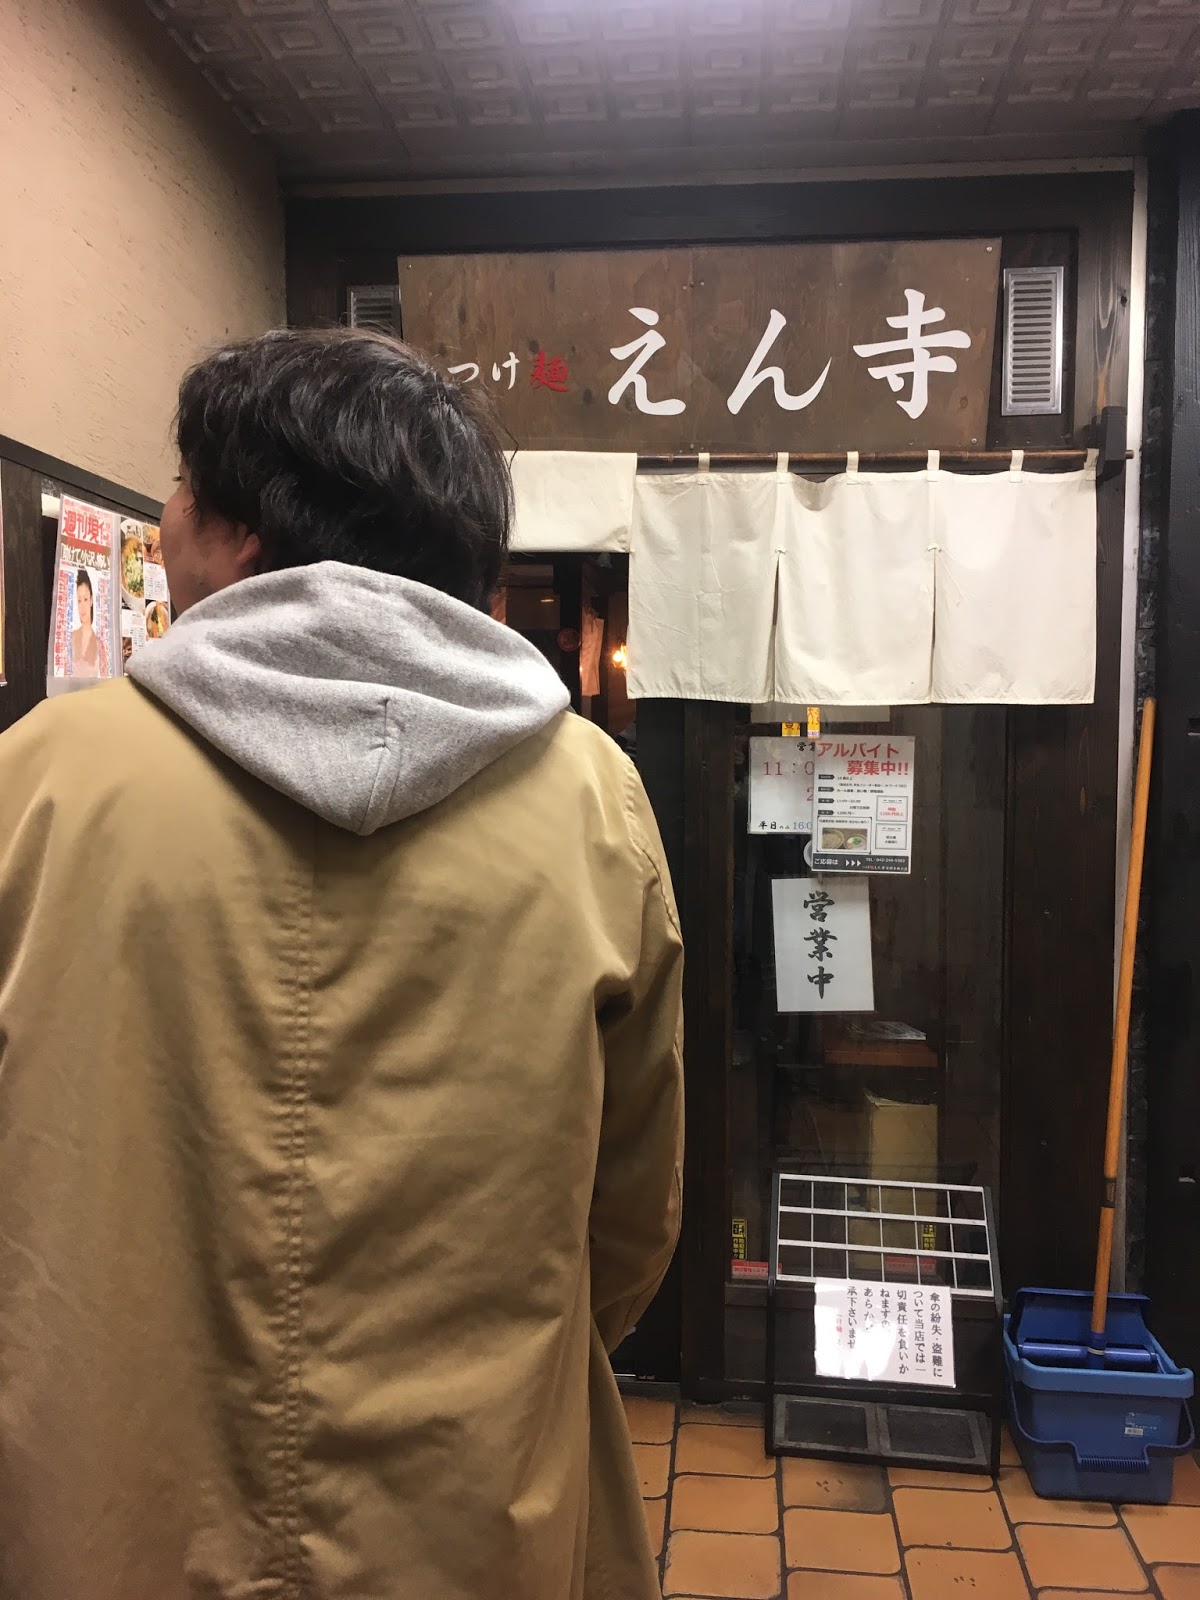 [日本/東京] 不負責任的拉麵筆記 - 閒談10家人氣沾麵拉麵店